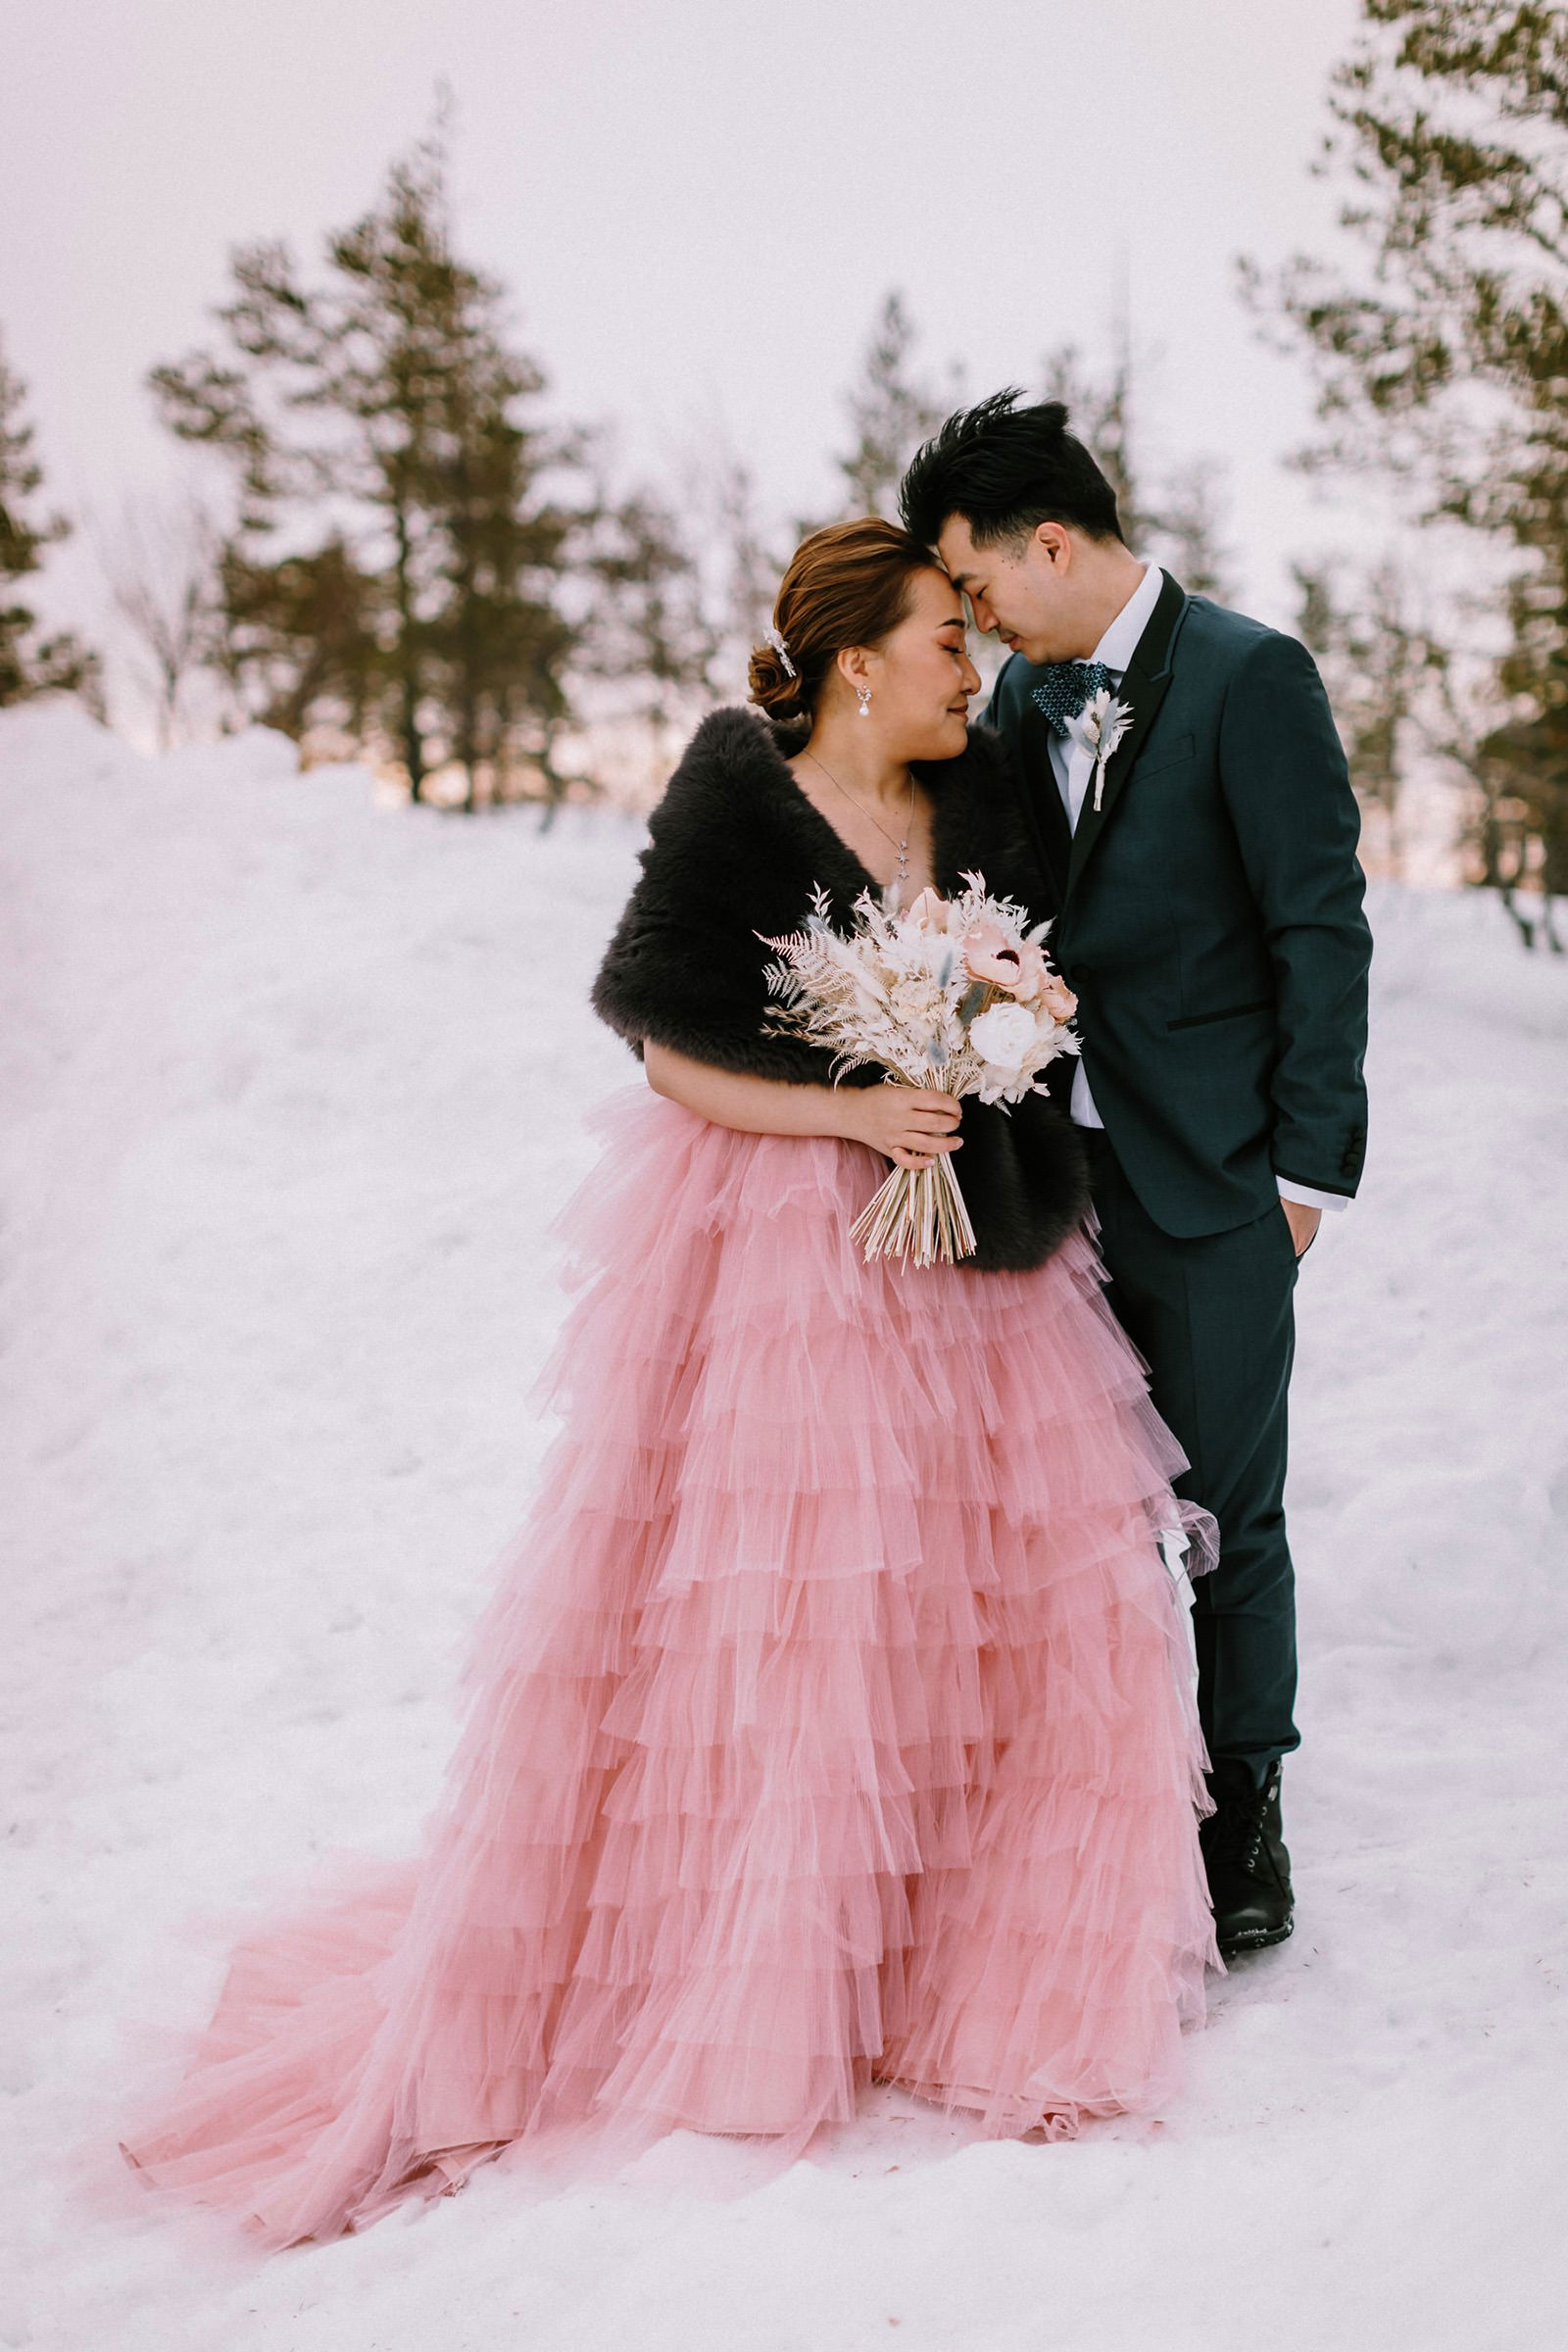 honeymoon photography in Lapland